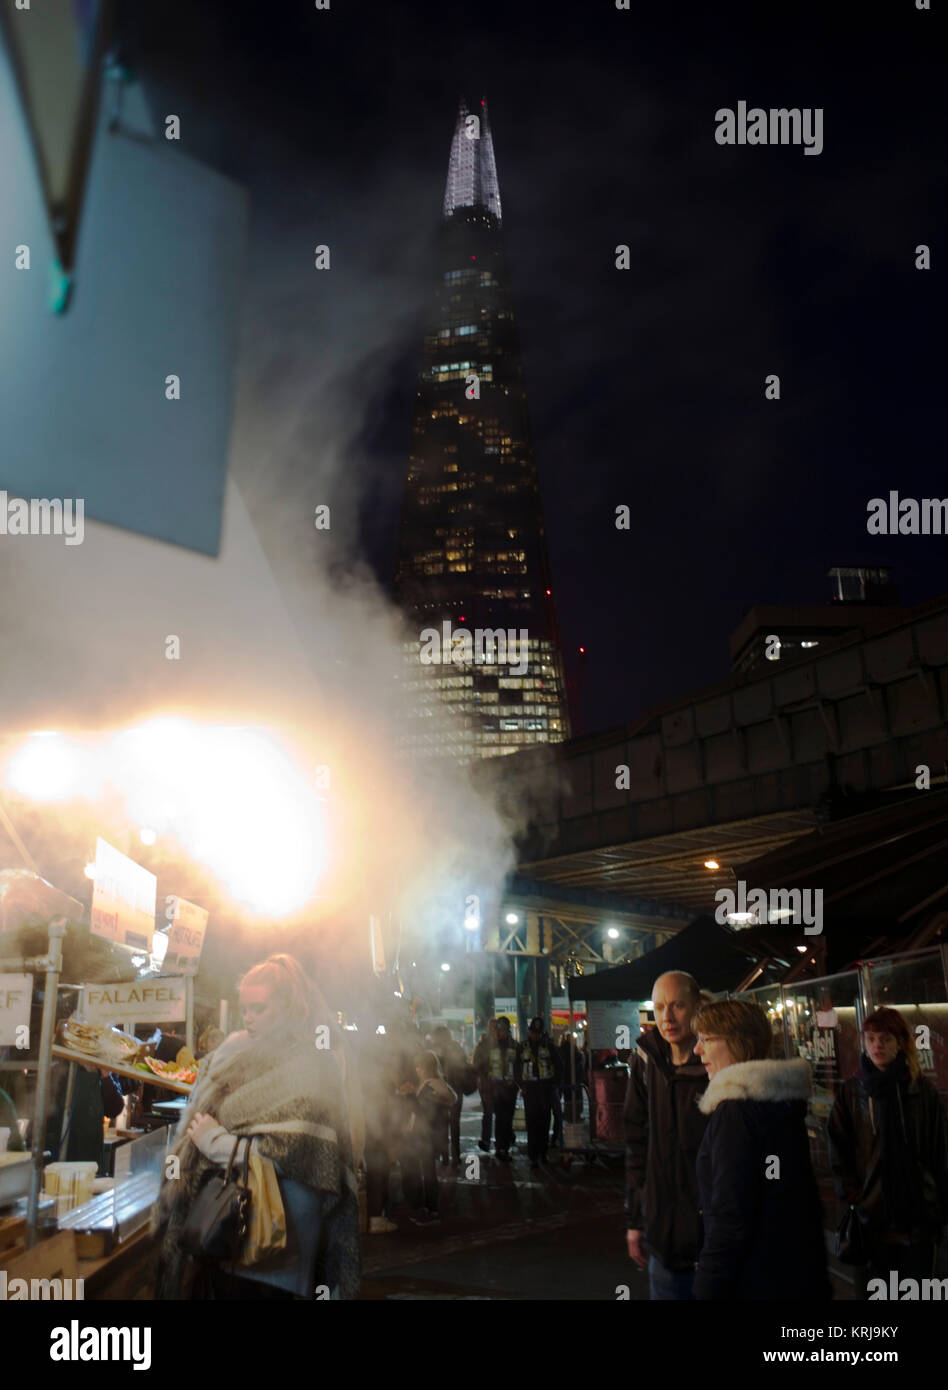 Der Shard Hochhaustürmen über garküchen am Abend über Borough Markt, in London, Großbritannien, 19. Dezember 2017 Stockfoto